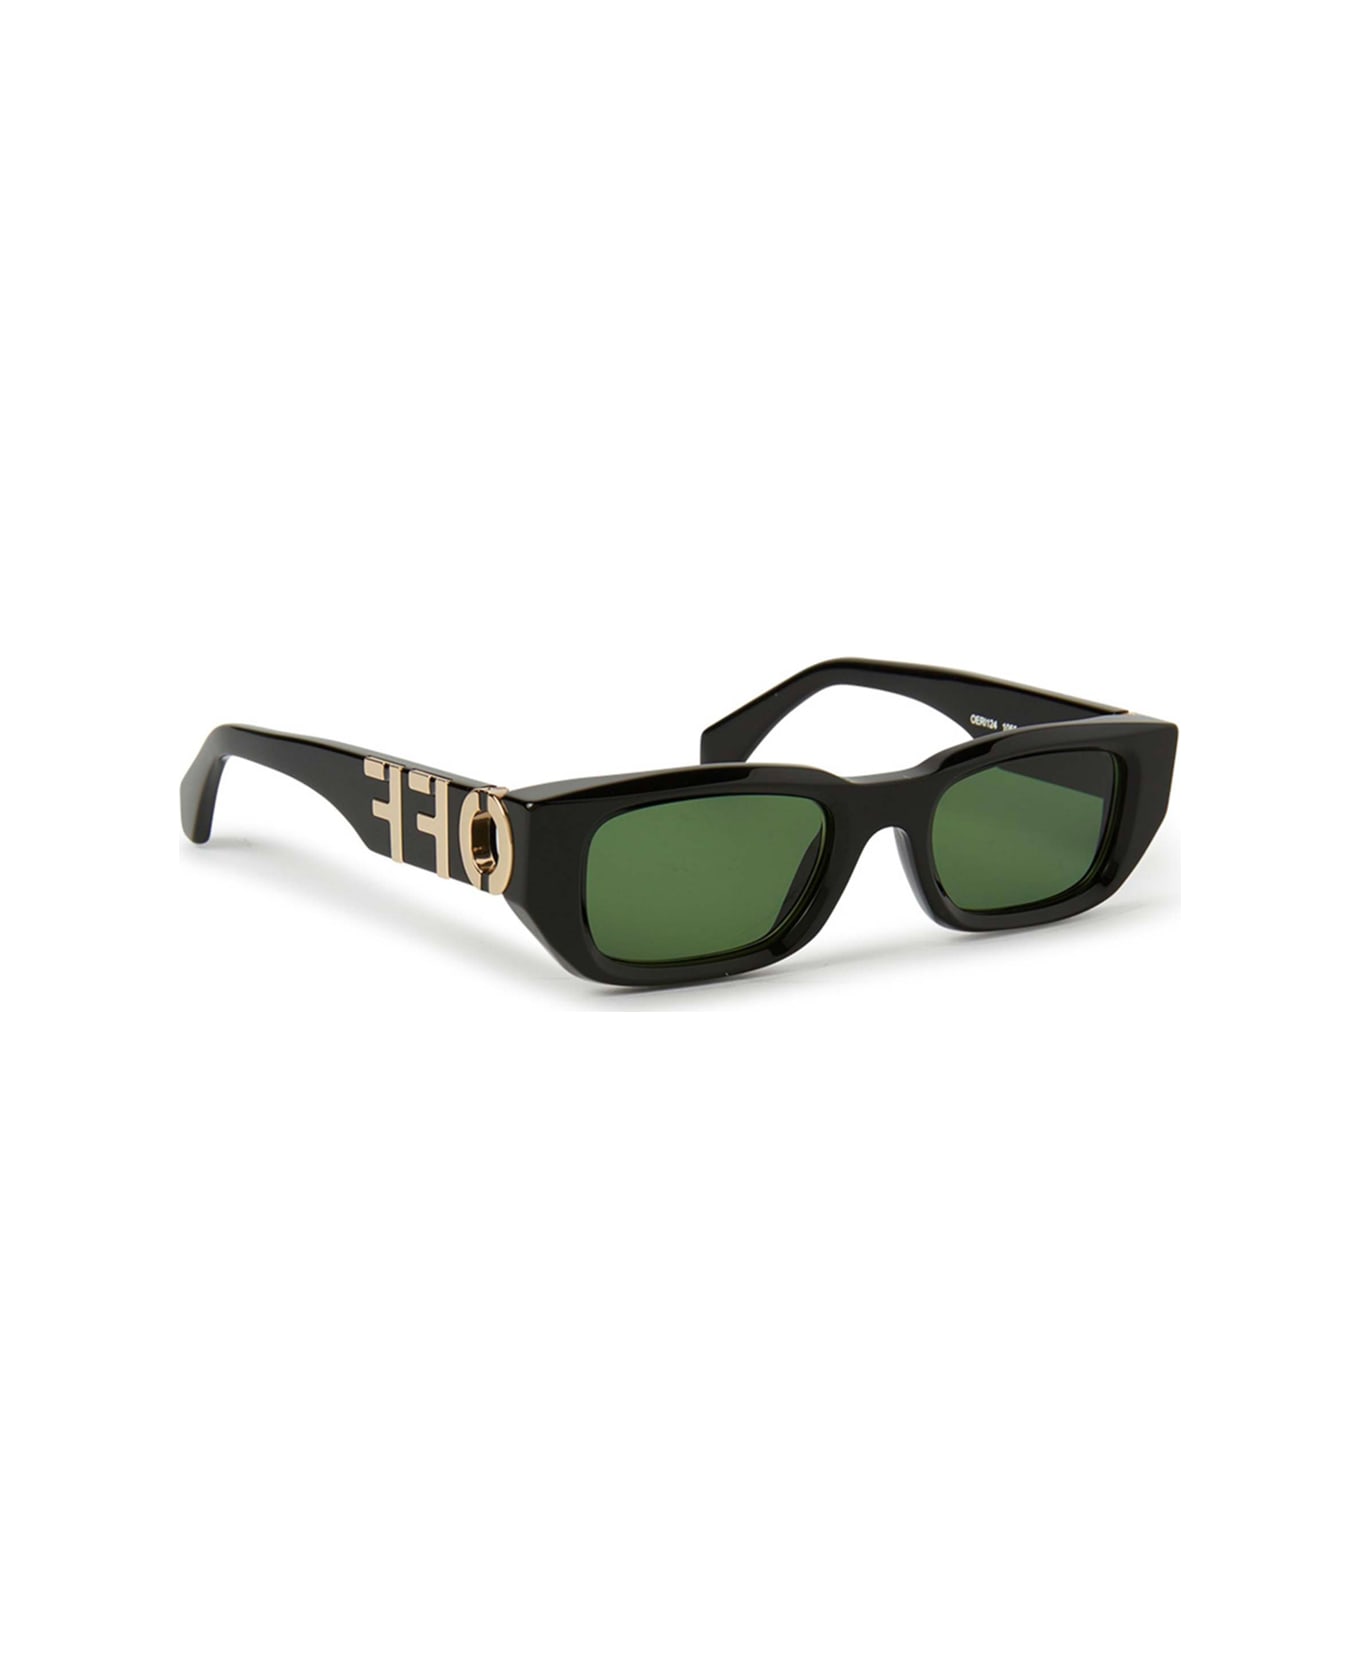 Off-White Oeri124 Fillmore 1055 Black Green Sunglasses - Nero